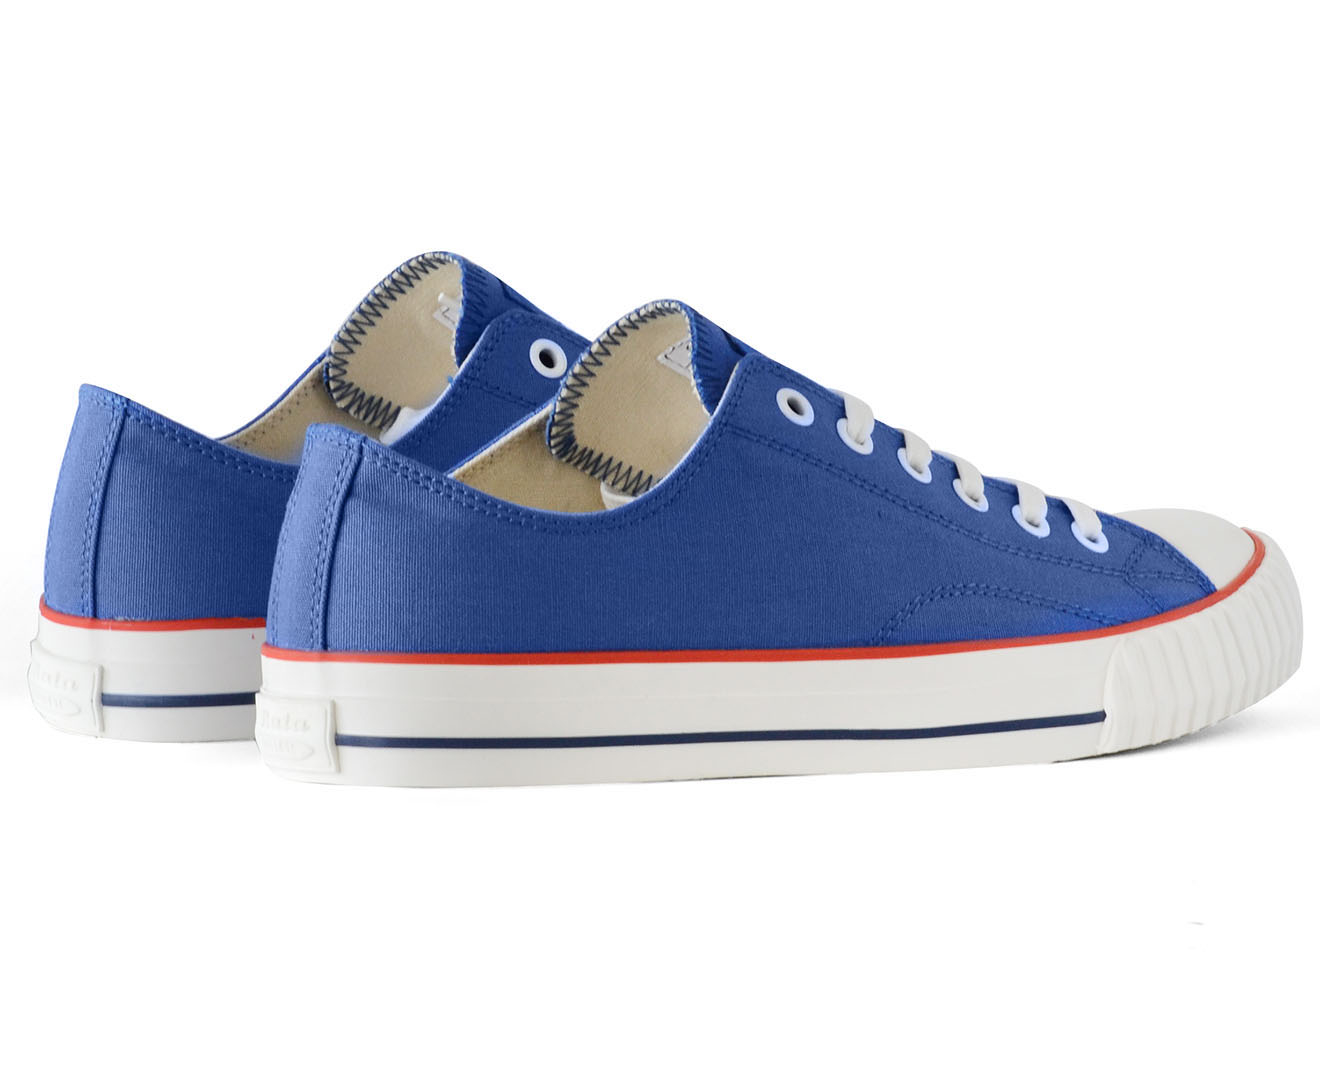 Bata Men's Low Cut Canvas Shoe - Retro Blue | Catch.co.nz